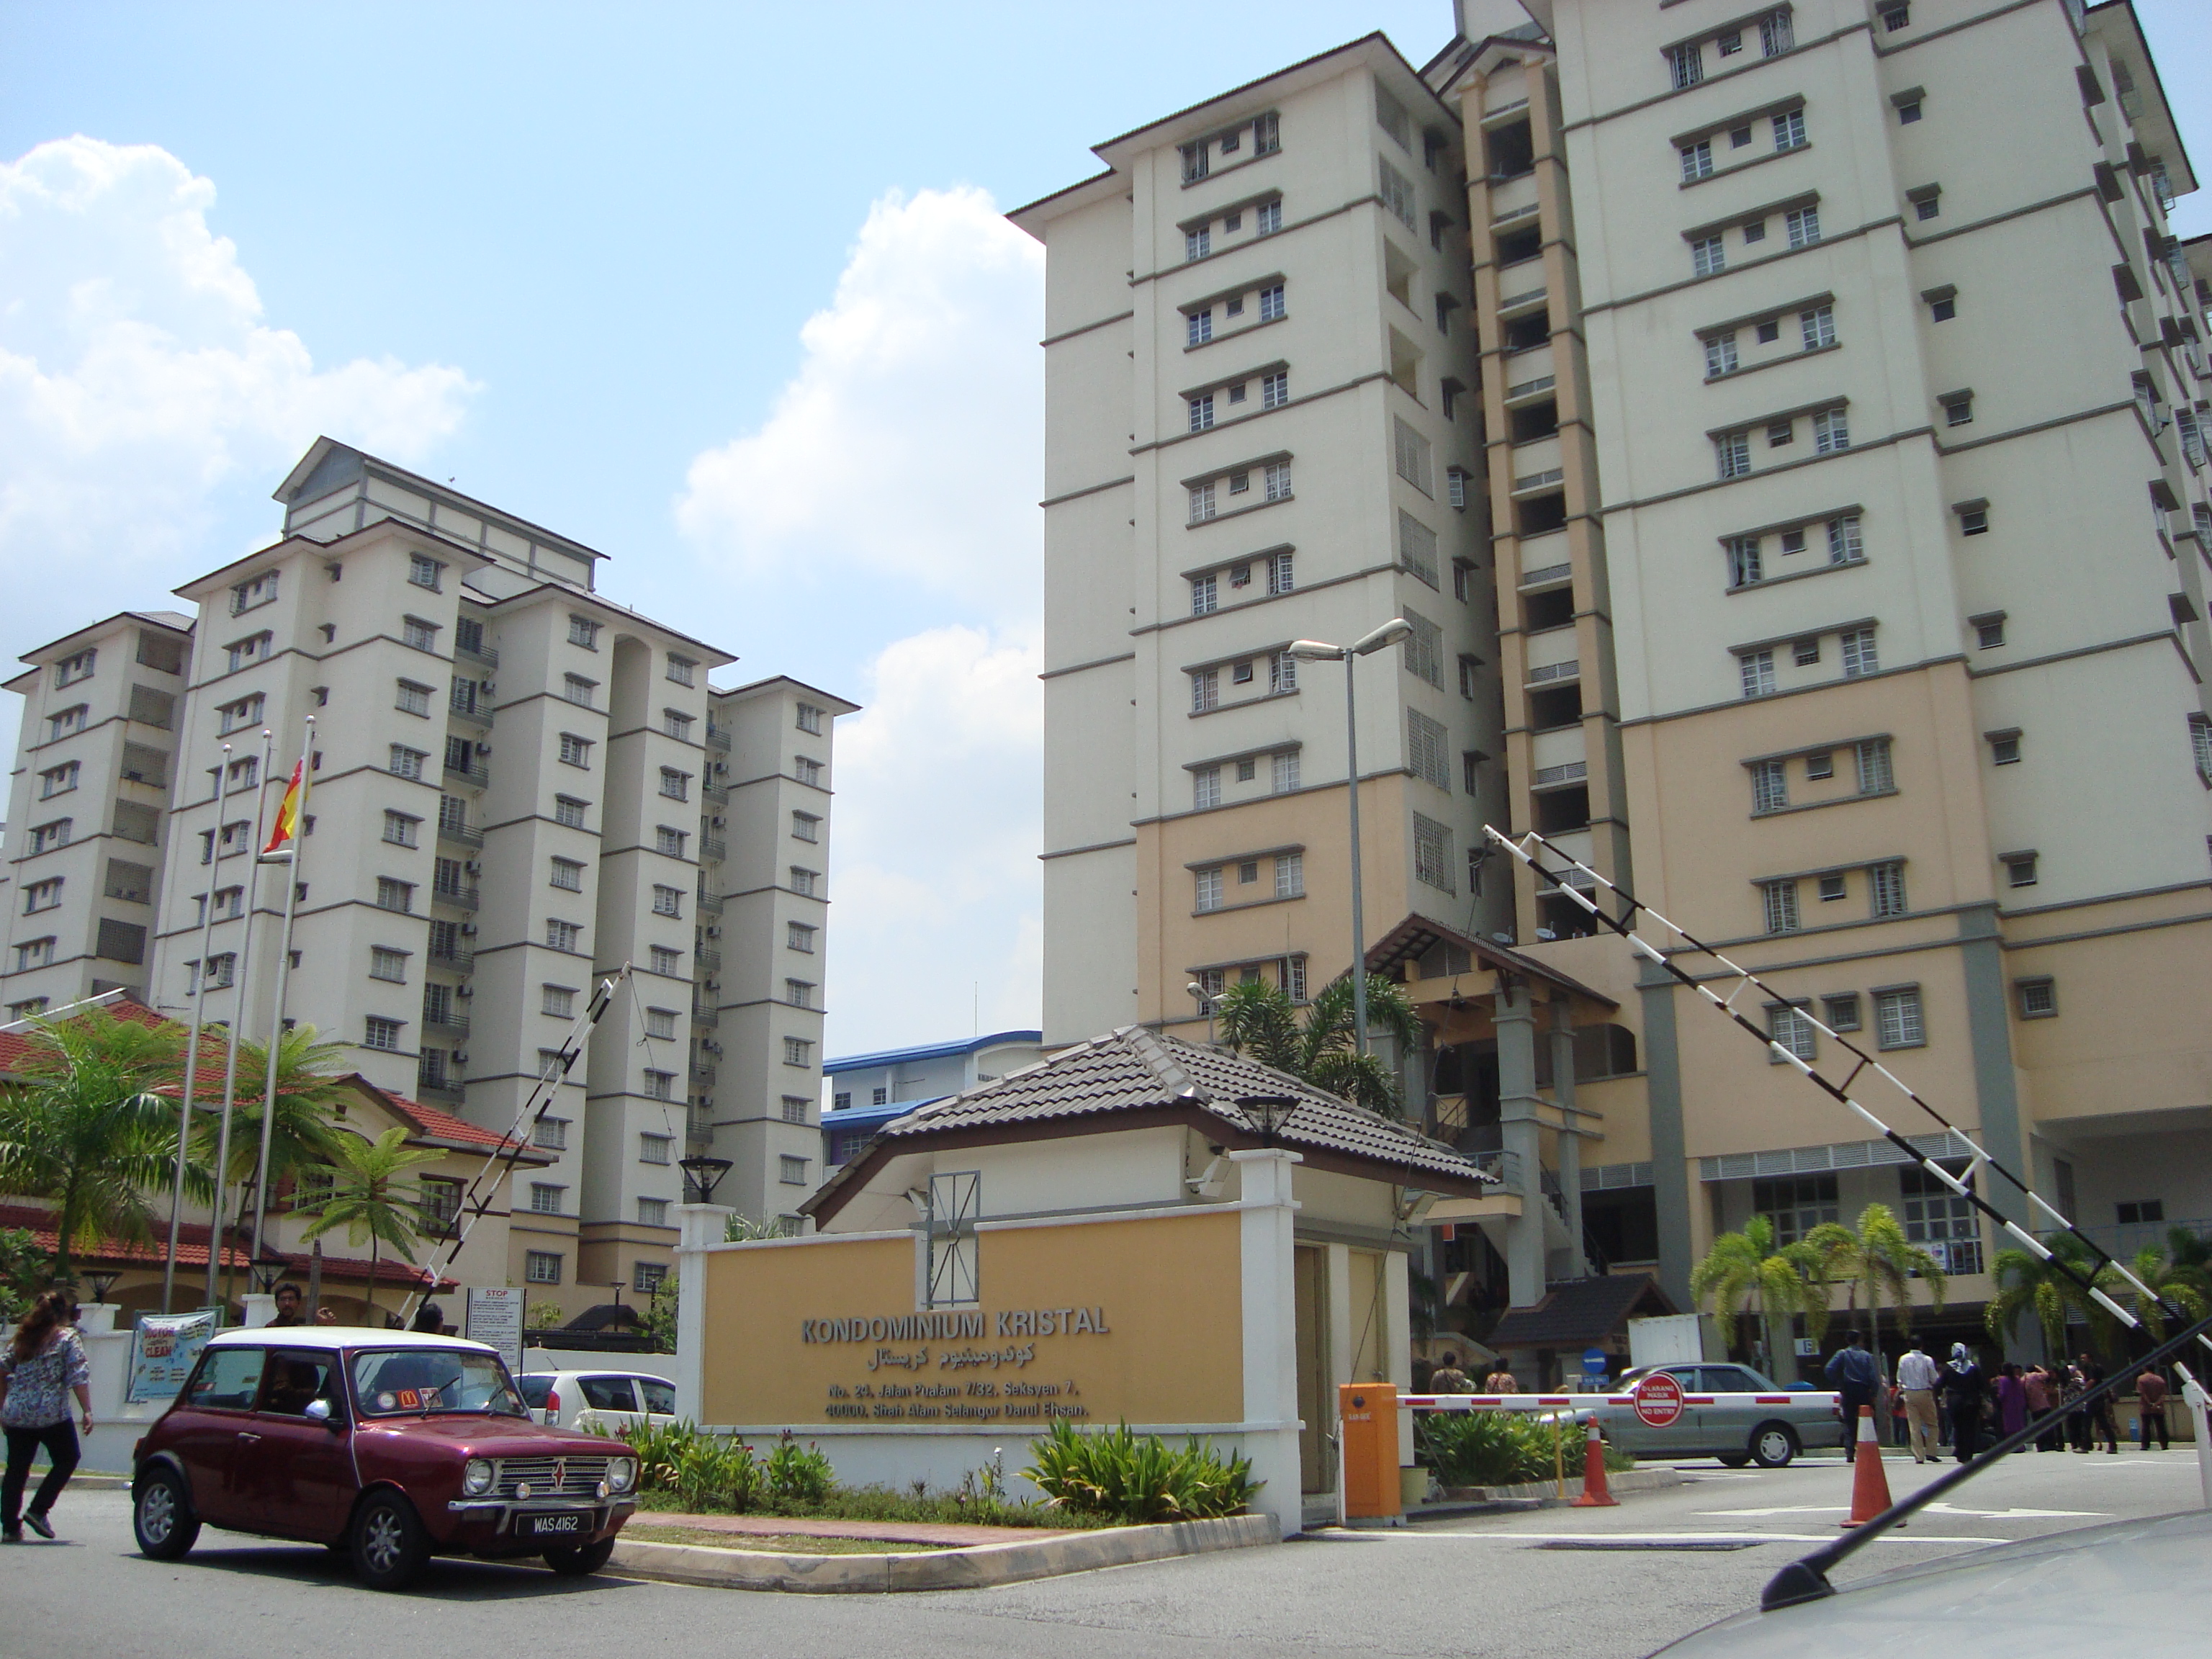 Rumah susun kondominium untuk warga kota Shah Alam Foto Yousri